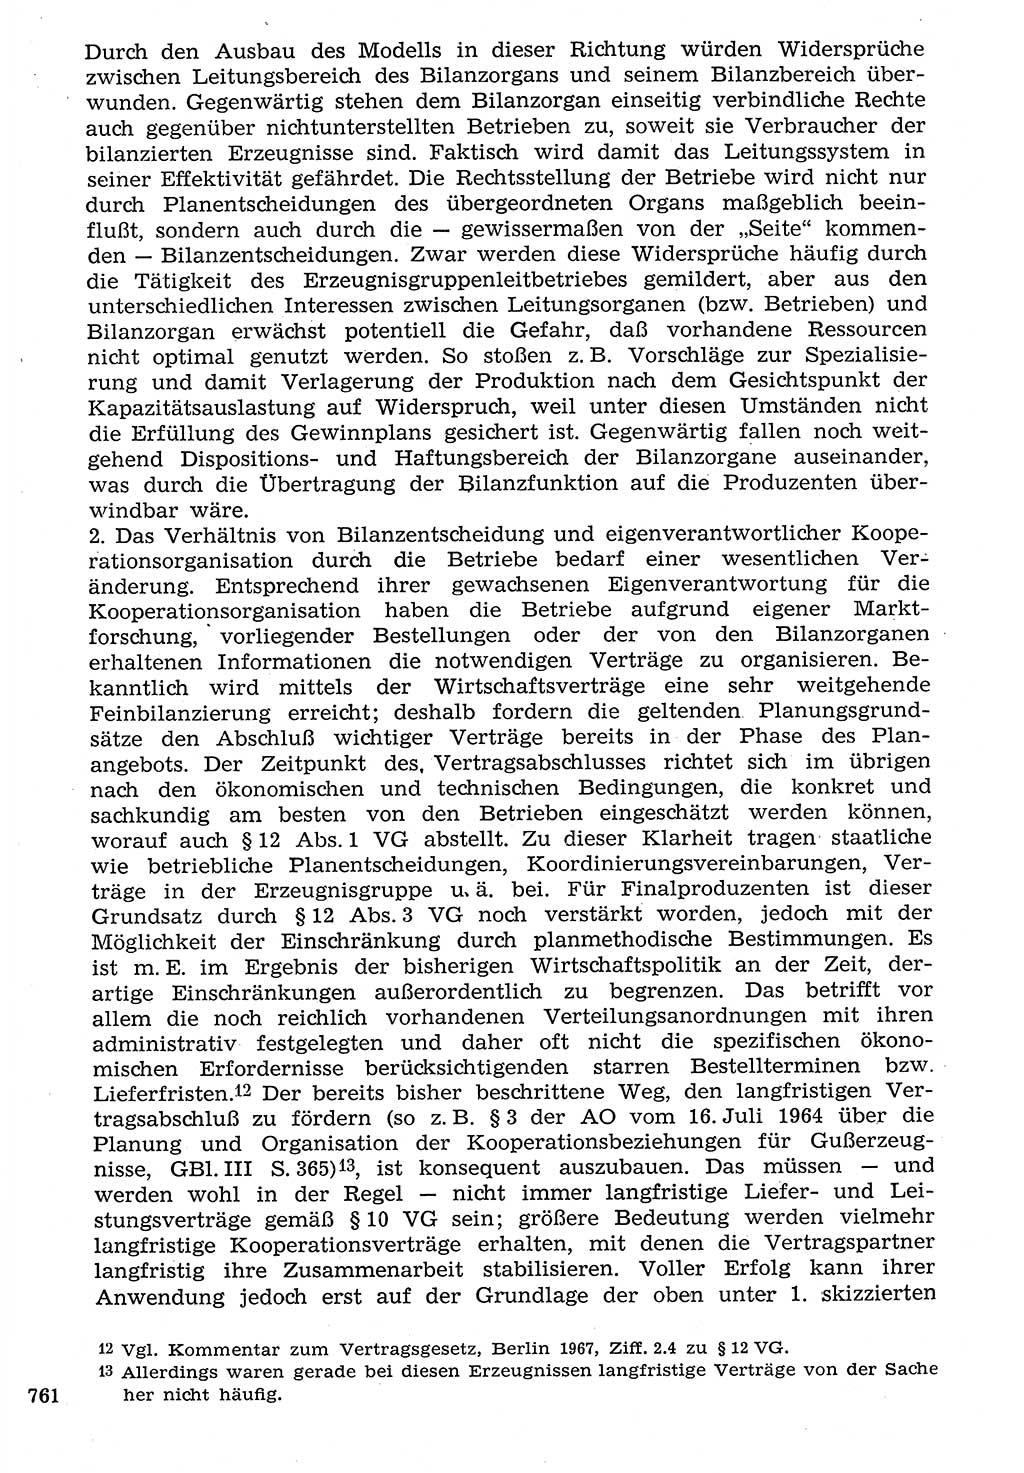 Staat und Recht (StuR), 17. Jahrgang [Deutsche Demokratische Republik (DDR)] 1968, Seite 761 (StuR DDR 1968, S. 761)